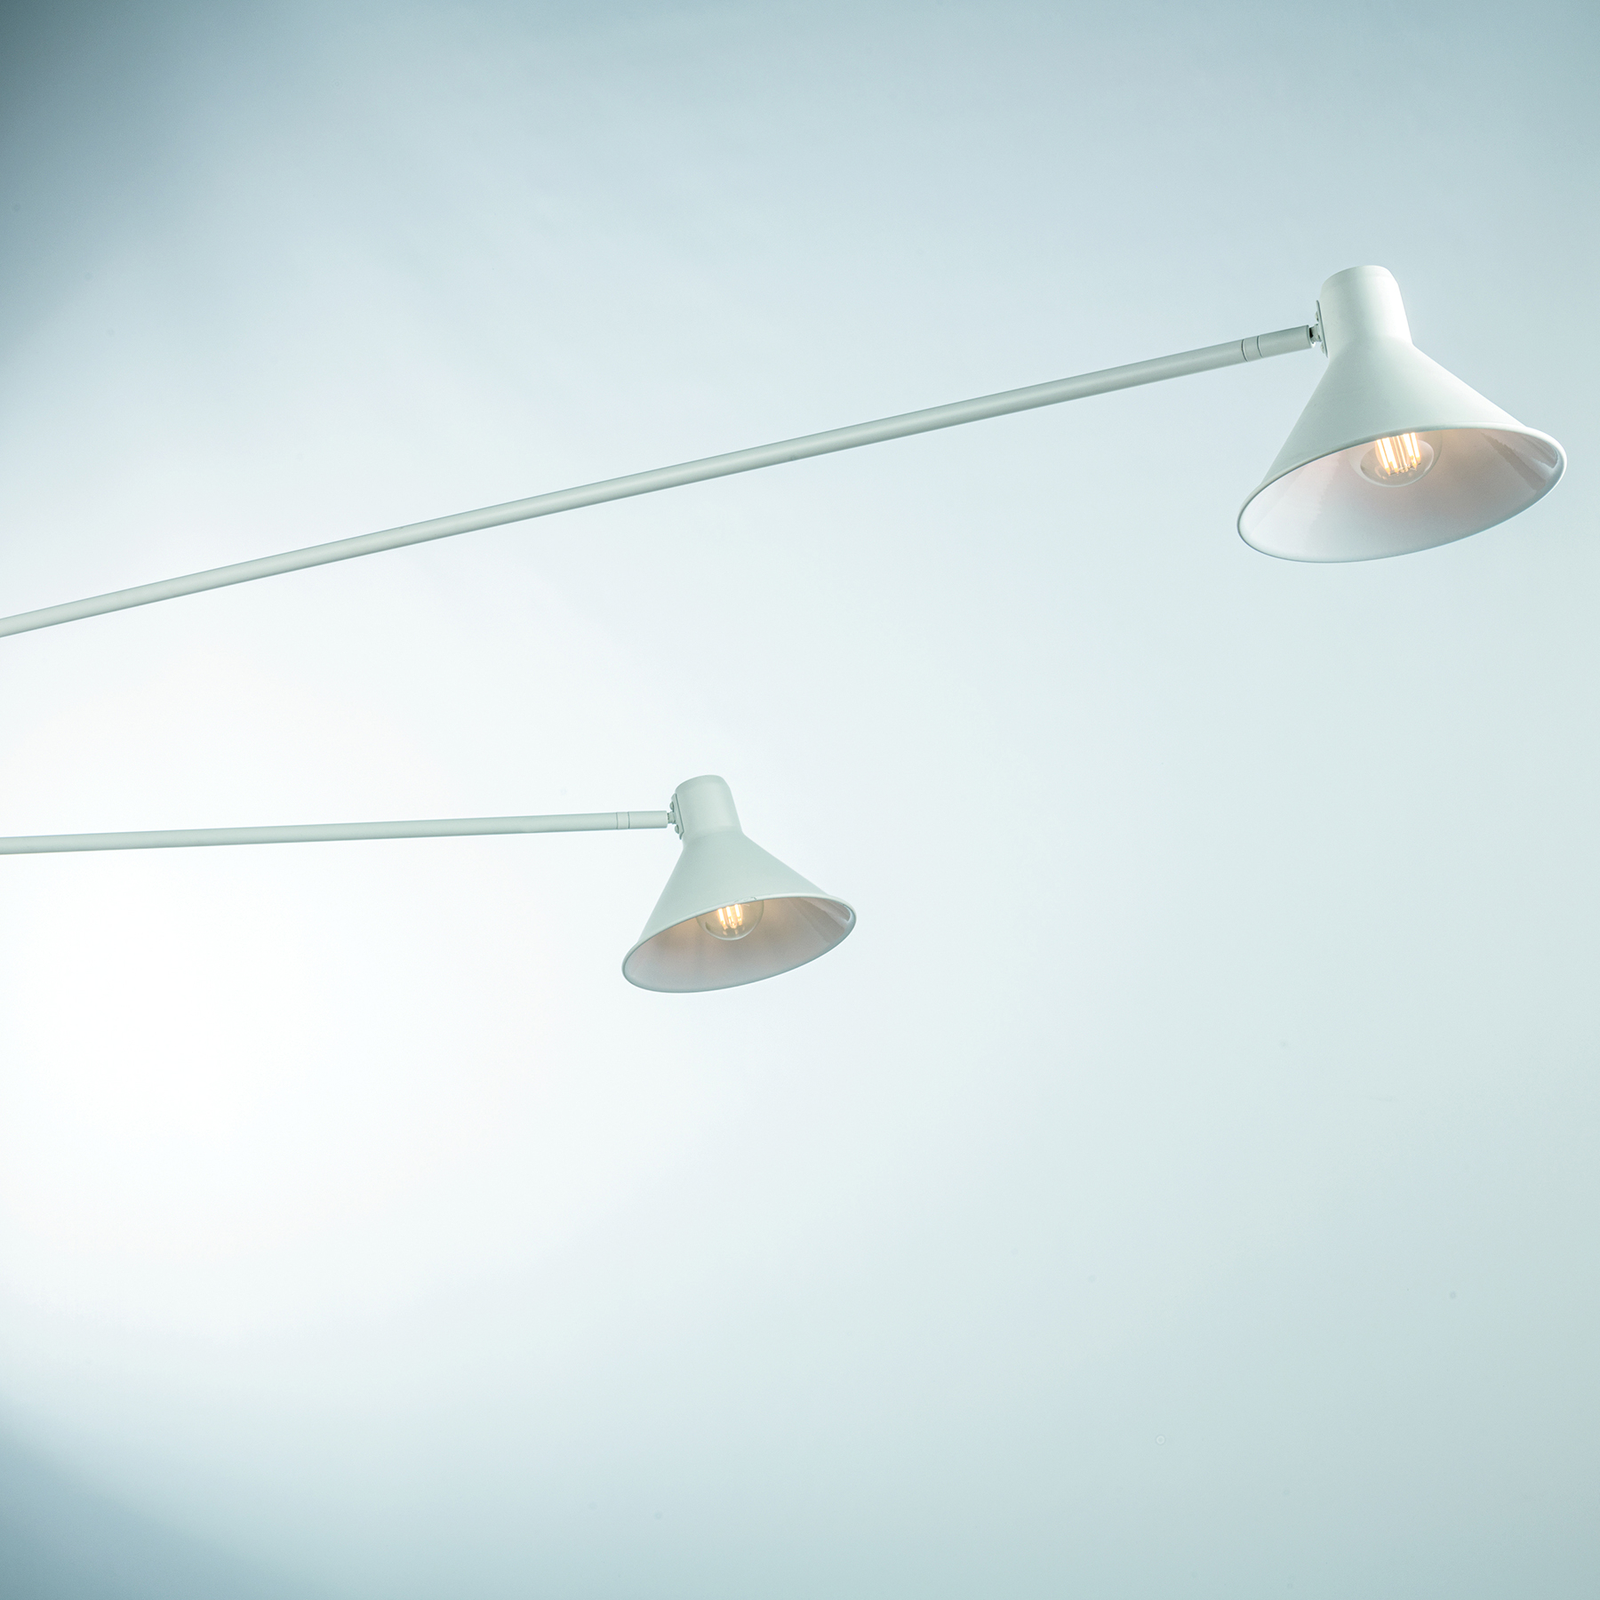 Duetto zidna svjetiljka sa dvije žarulje od metala, bijele boje